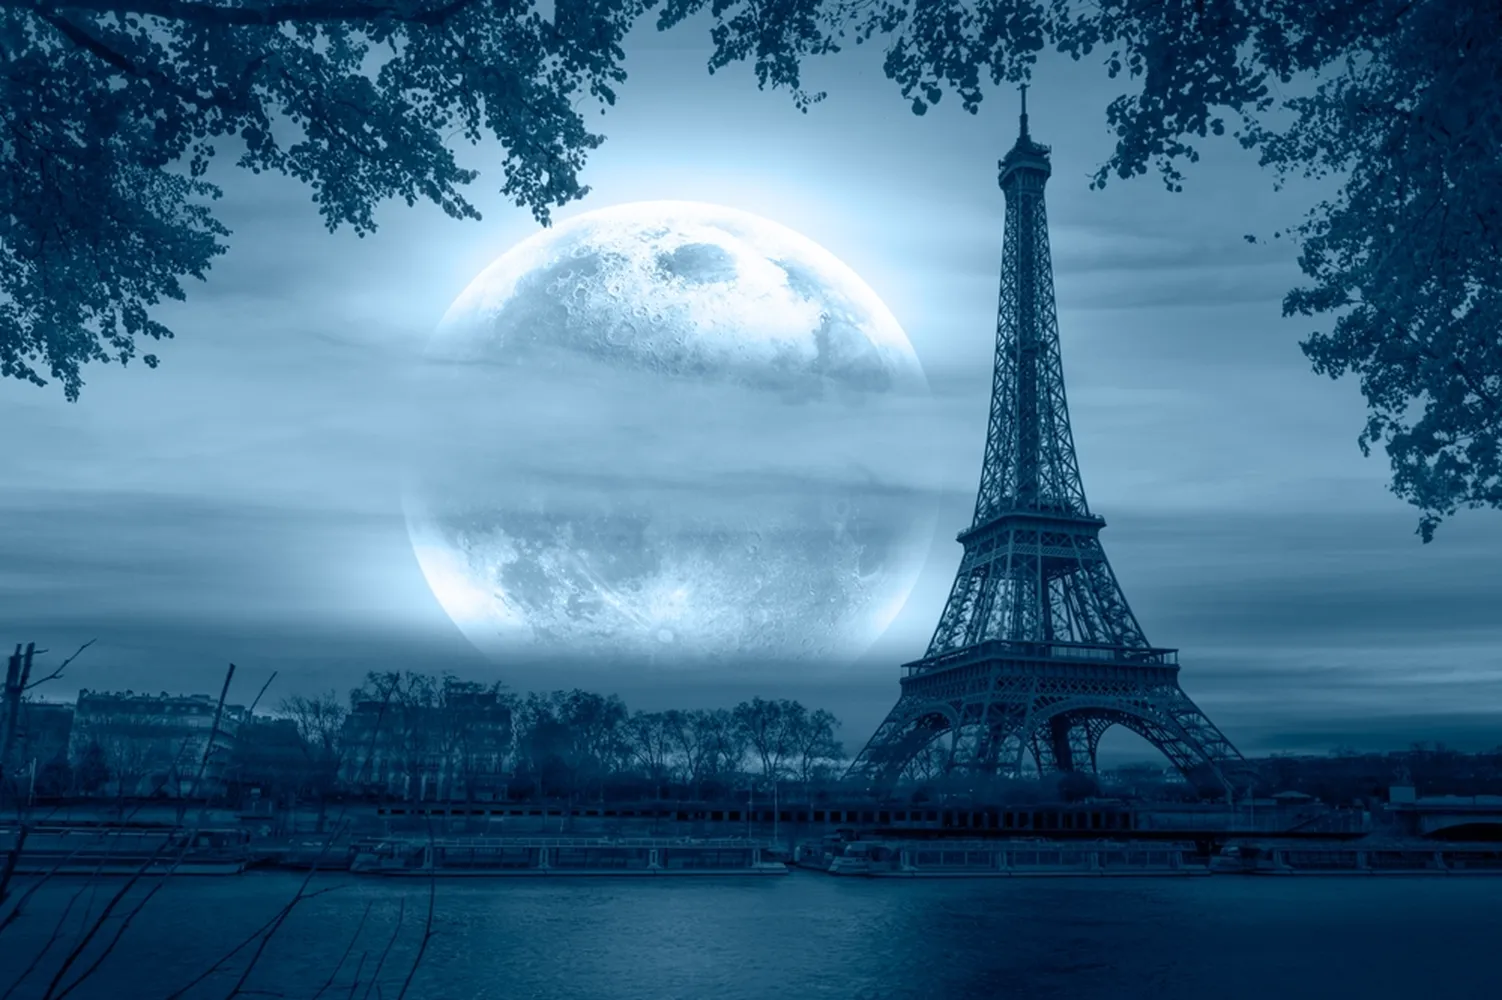 پوستر 3 بعدی طرح برج ایفل پاریس و رودخانه سن